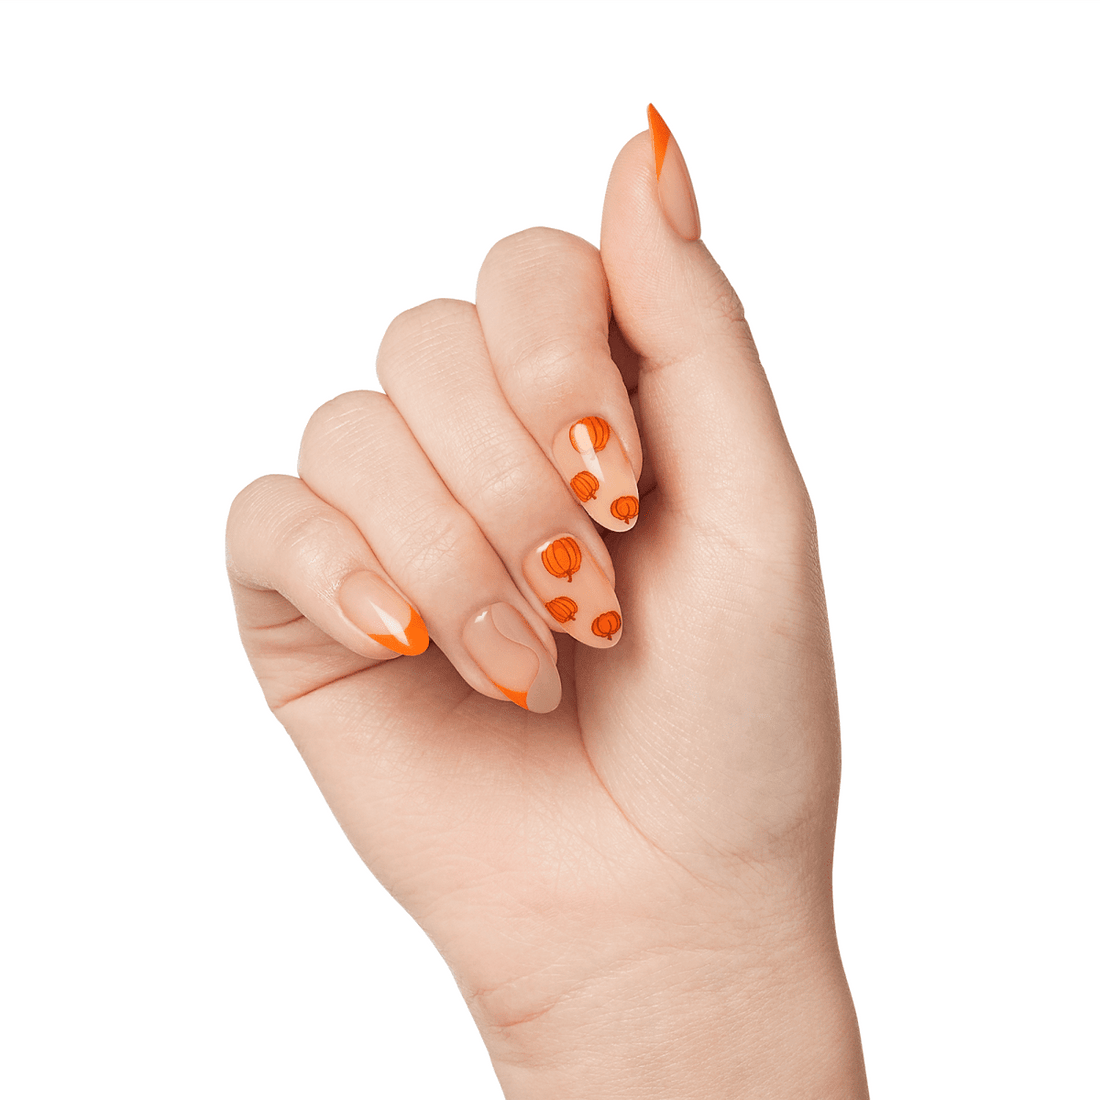 imPRESS Press-On Manicure - Pumpkin kisses